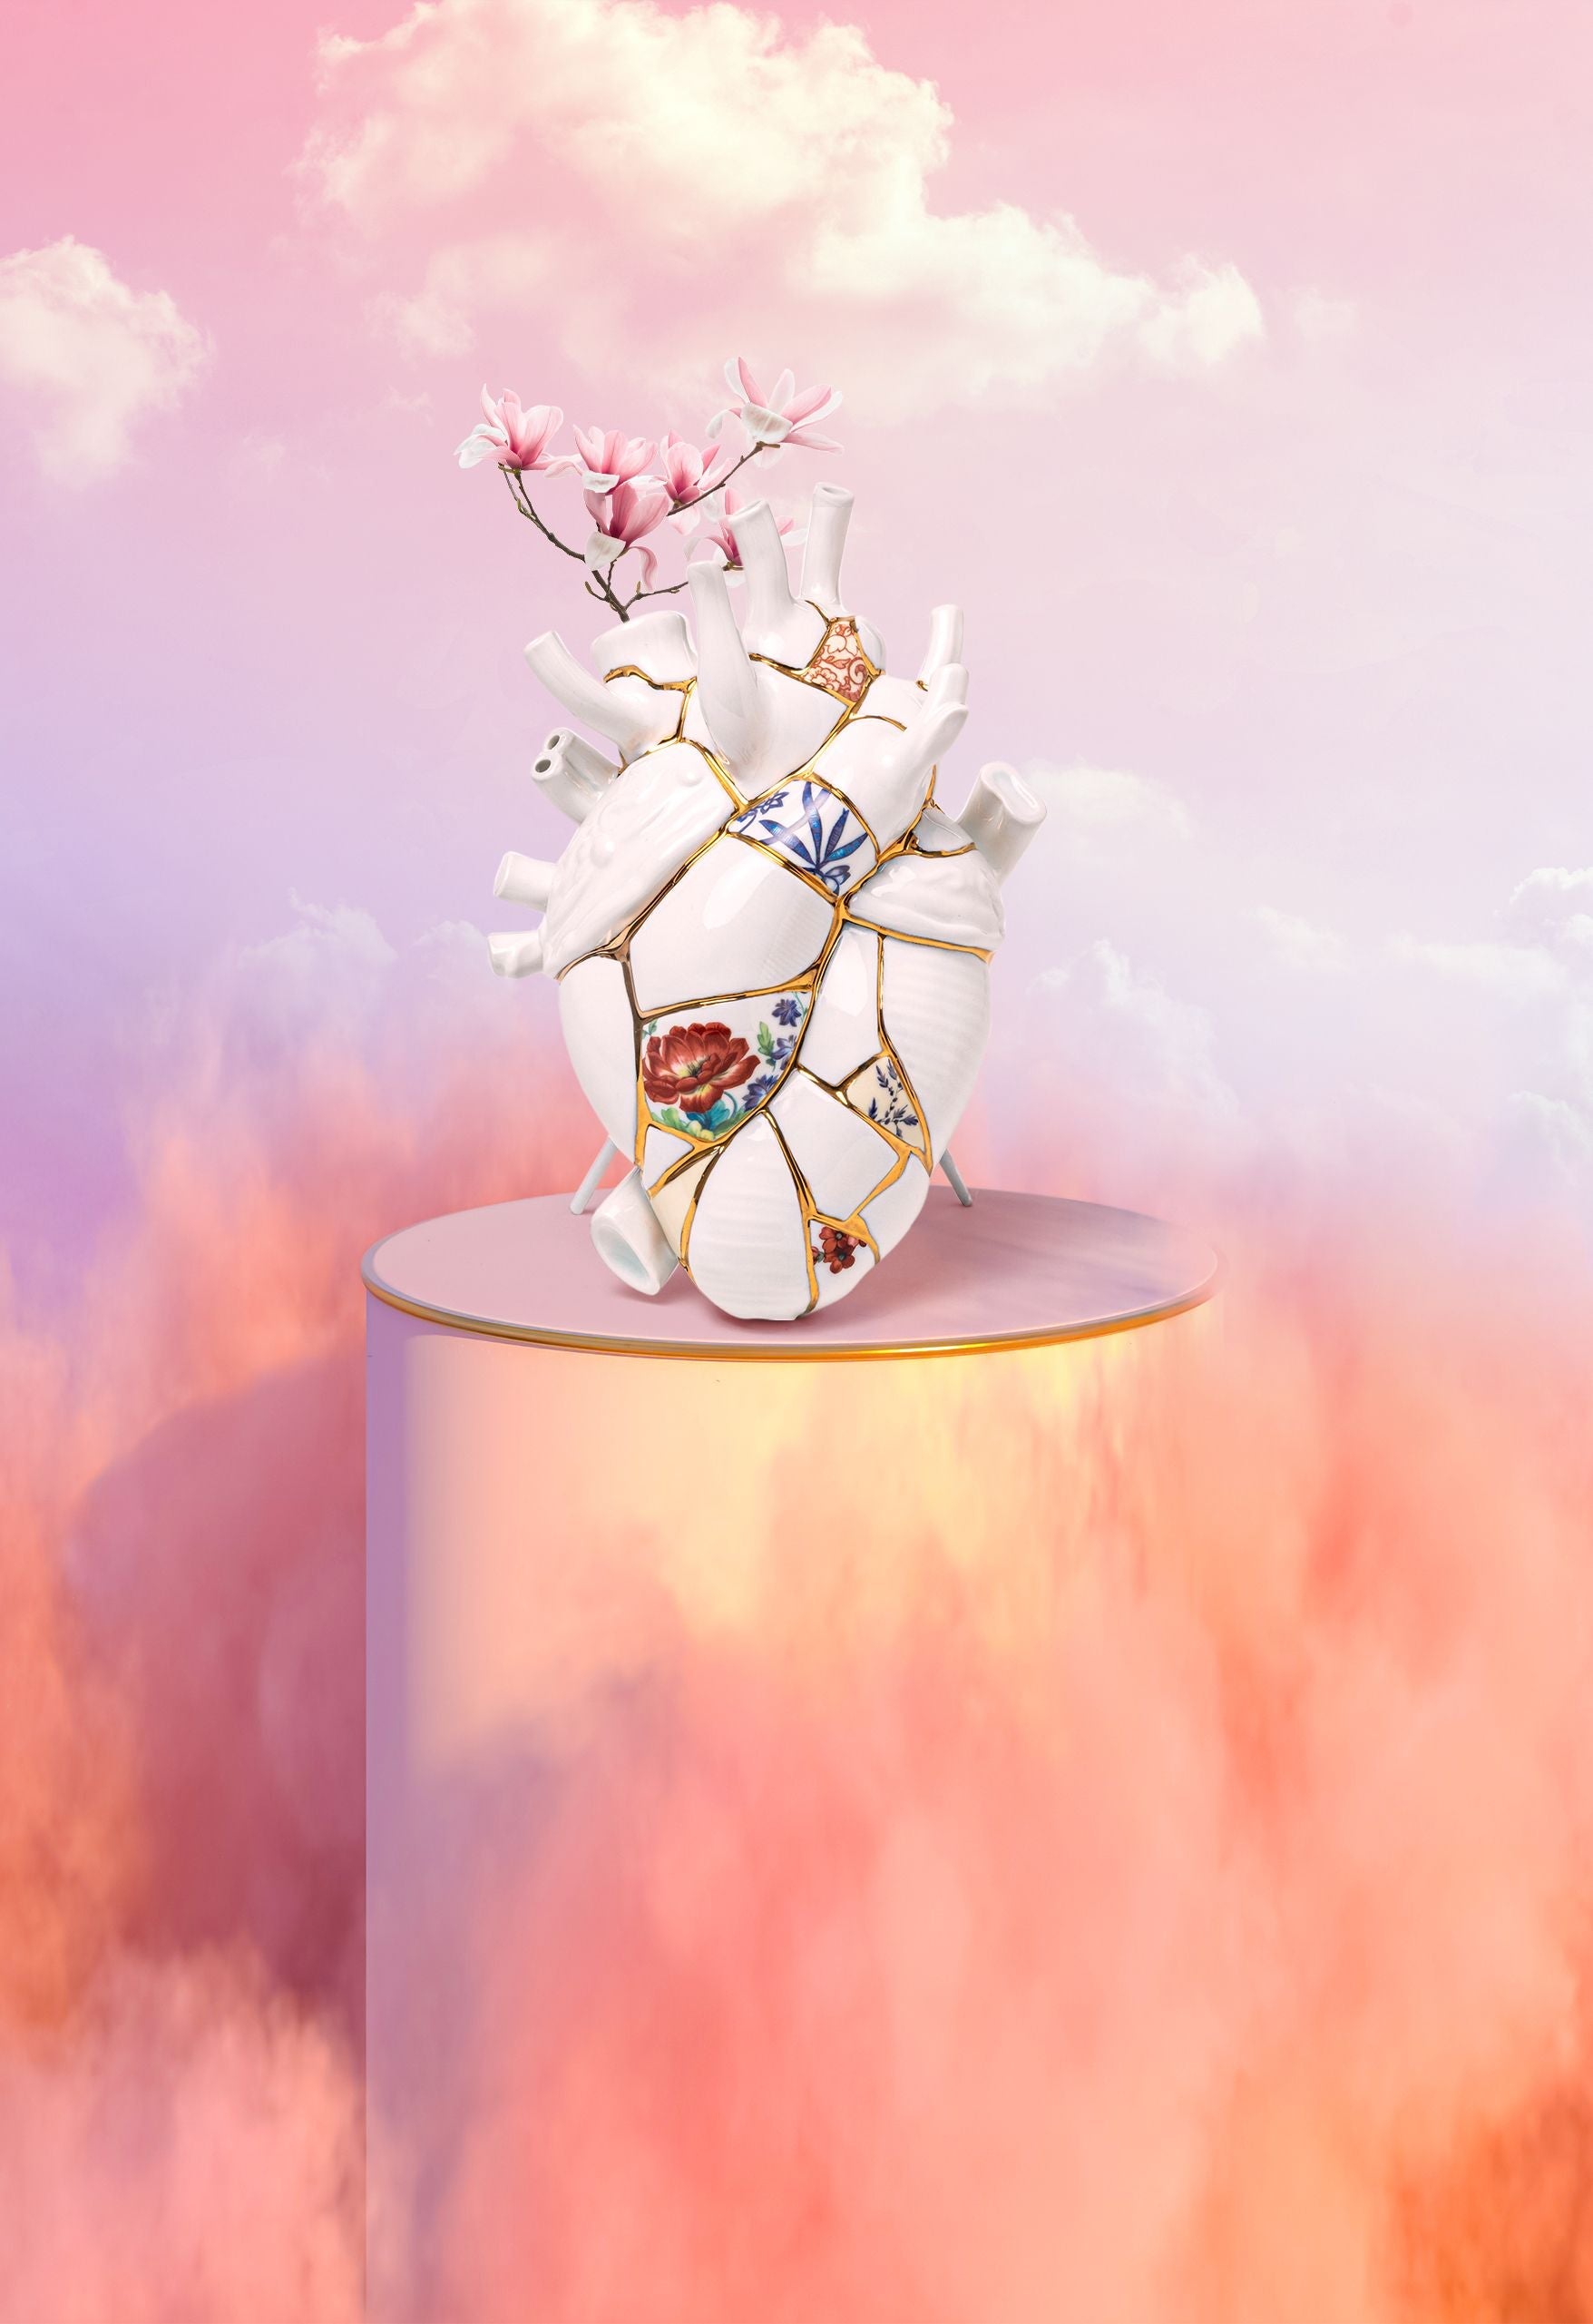 Seletti Kintsugi/Love in Bloom Vase